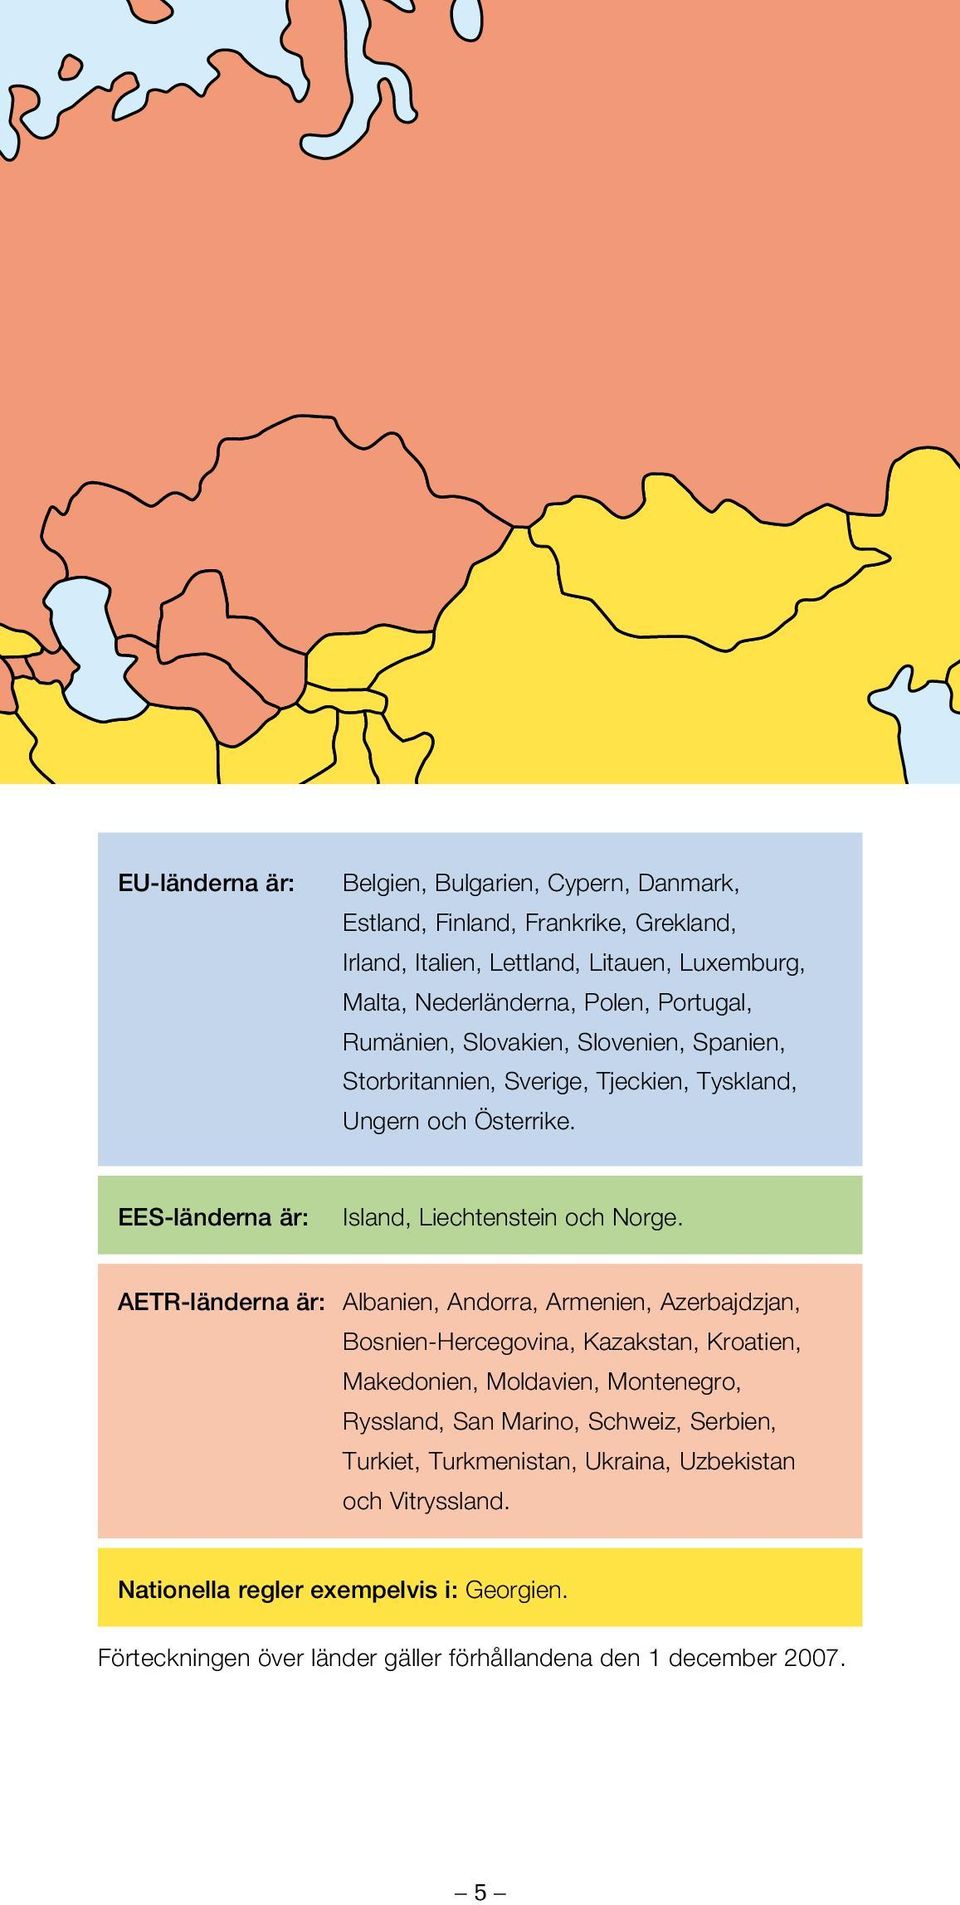 AETR-länderna är: Albanien, Andorra, Armenien, Azerbajdzjan, Bosnien-Hercegovina, Kazakstan, Kroatien, Makedonien, Moldavien, Montenegro, Ryssland, San Marino, Schweiz,